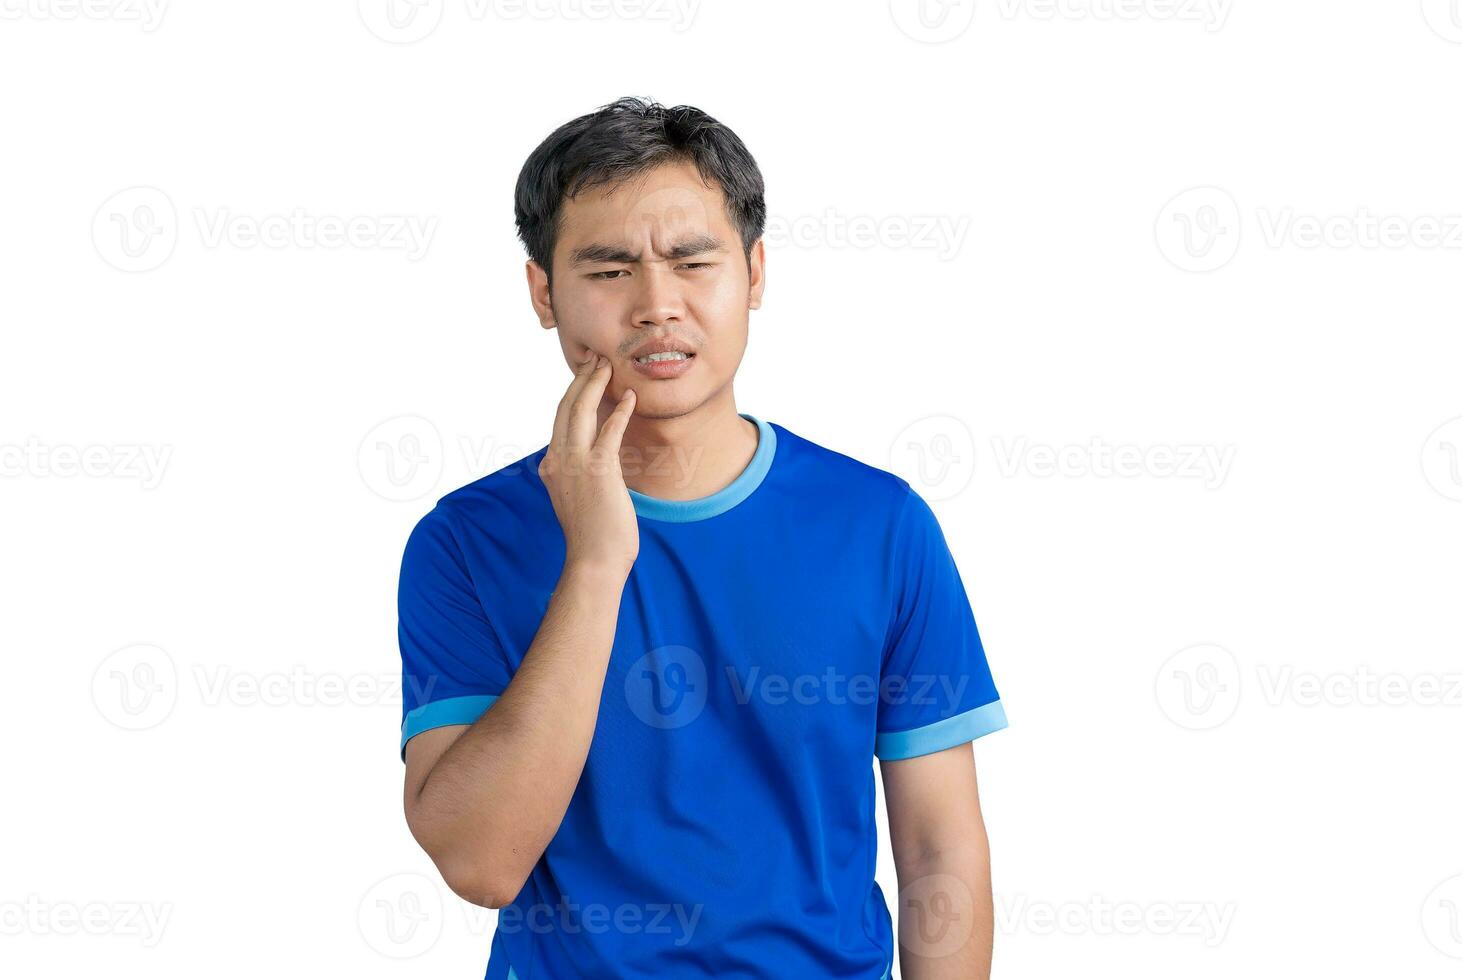 ung asiatisk man rörande mun lidande från tandvärk eller dental sjukdom på tänder isolerat på vit bakgrund. manlig känsla smärta, innehav hans kind med hand, lidande från dålig tandvärk. tandläkare foto